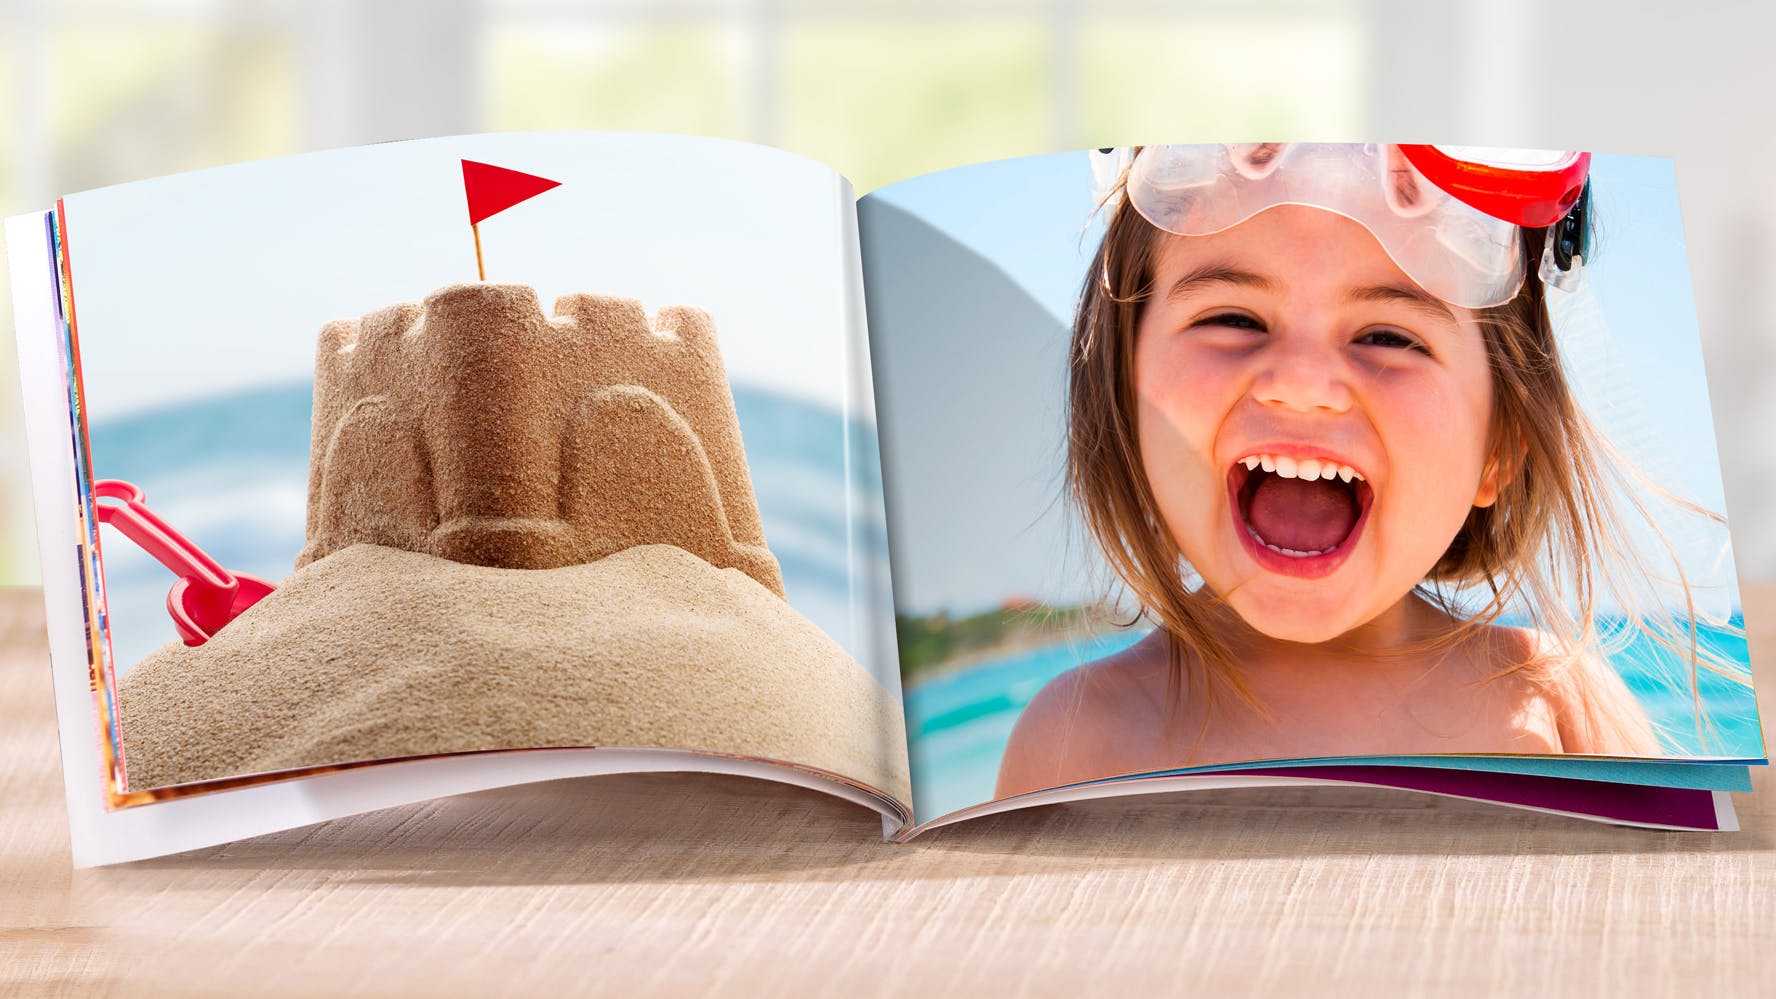 Vierkant mini fotoboek met kind in zomerse sfeer